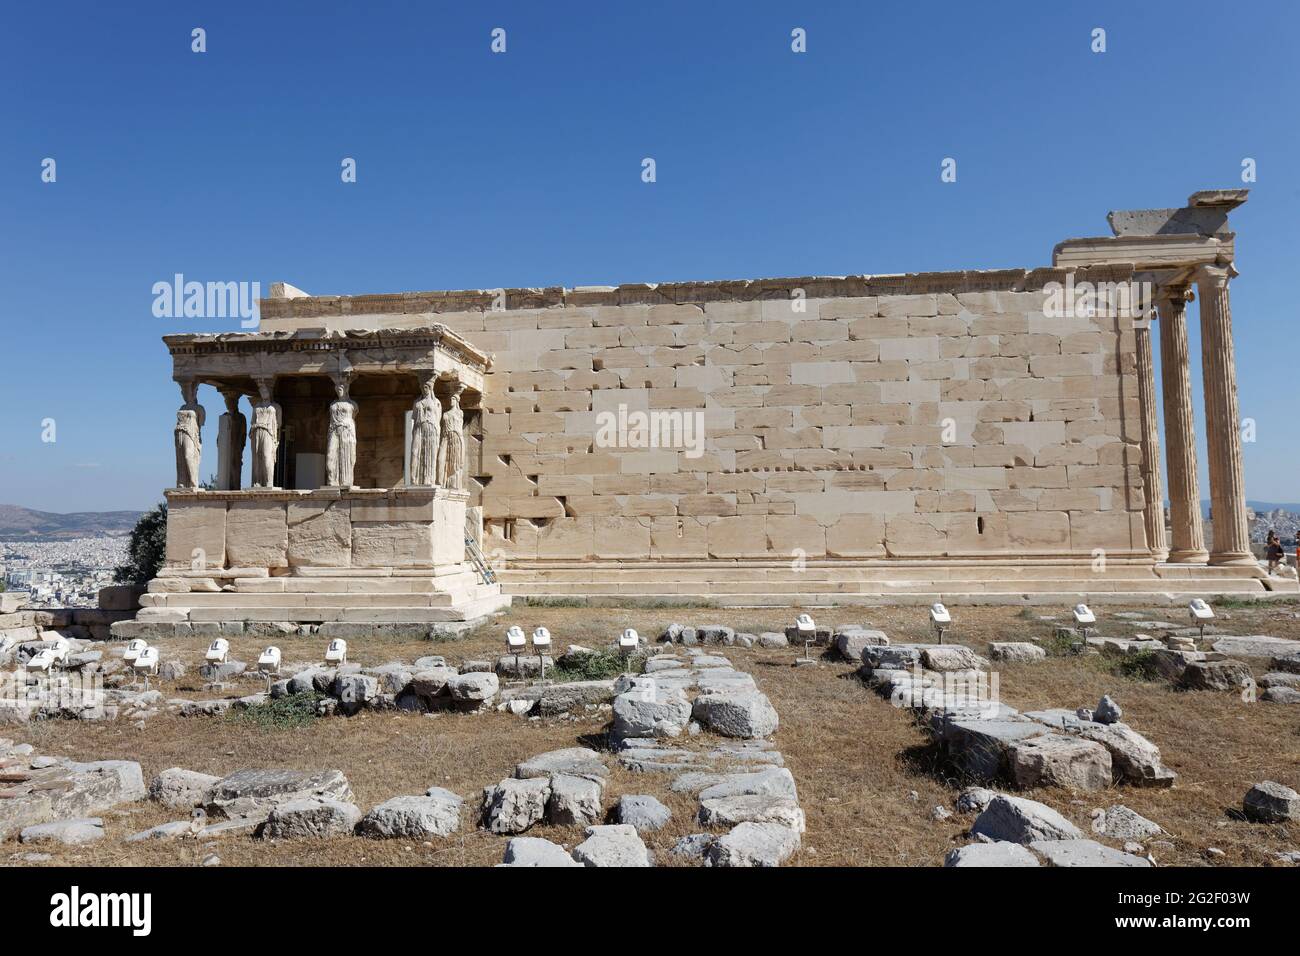 Vieux Temple d'Athéna - Acropole d'Athènes - Athènes Grèce Banque D'Images